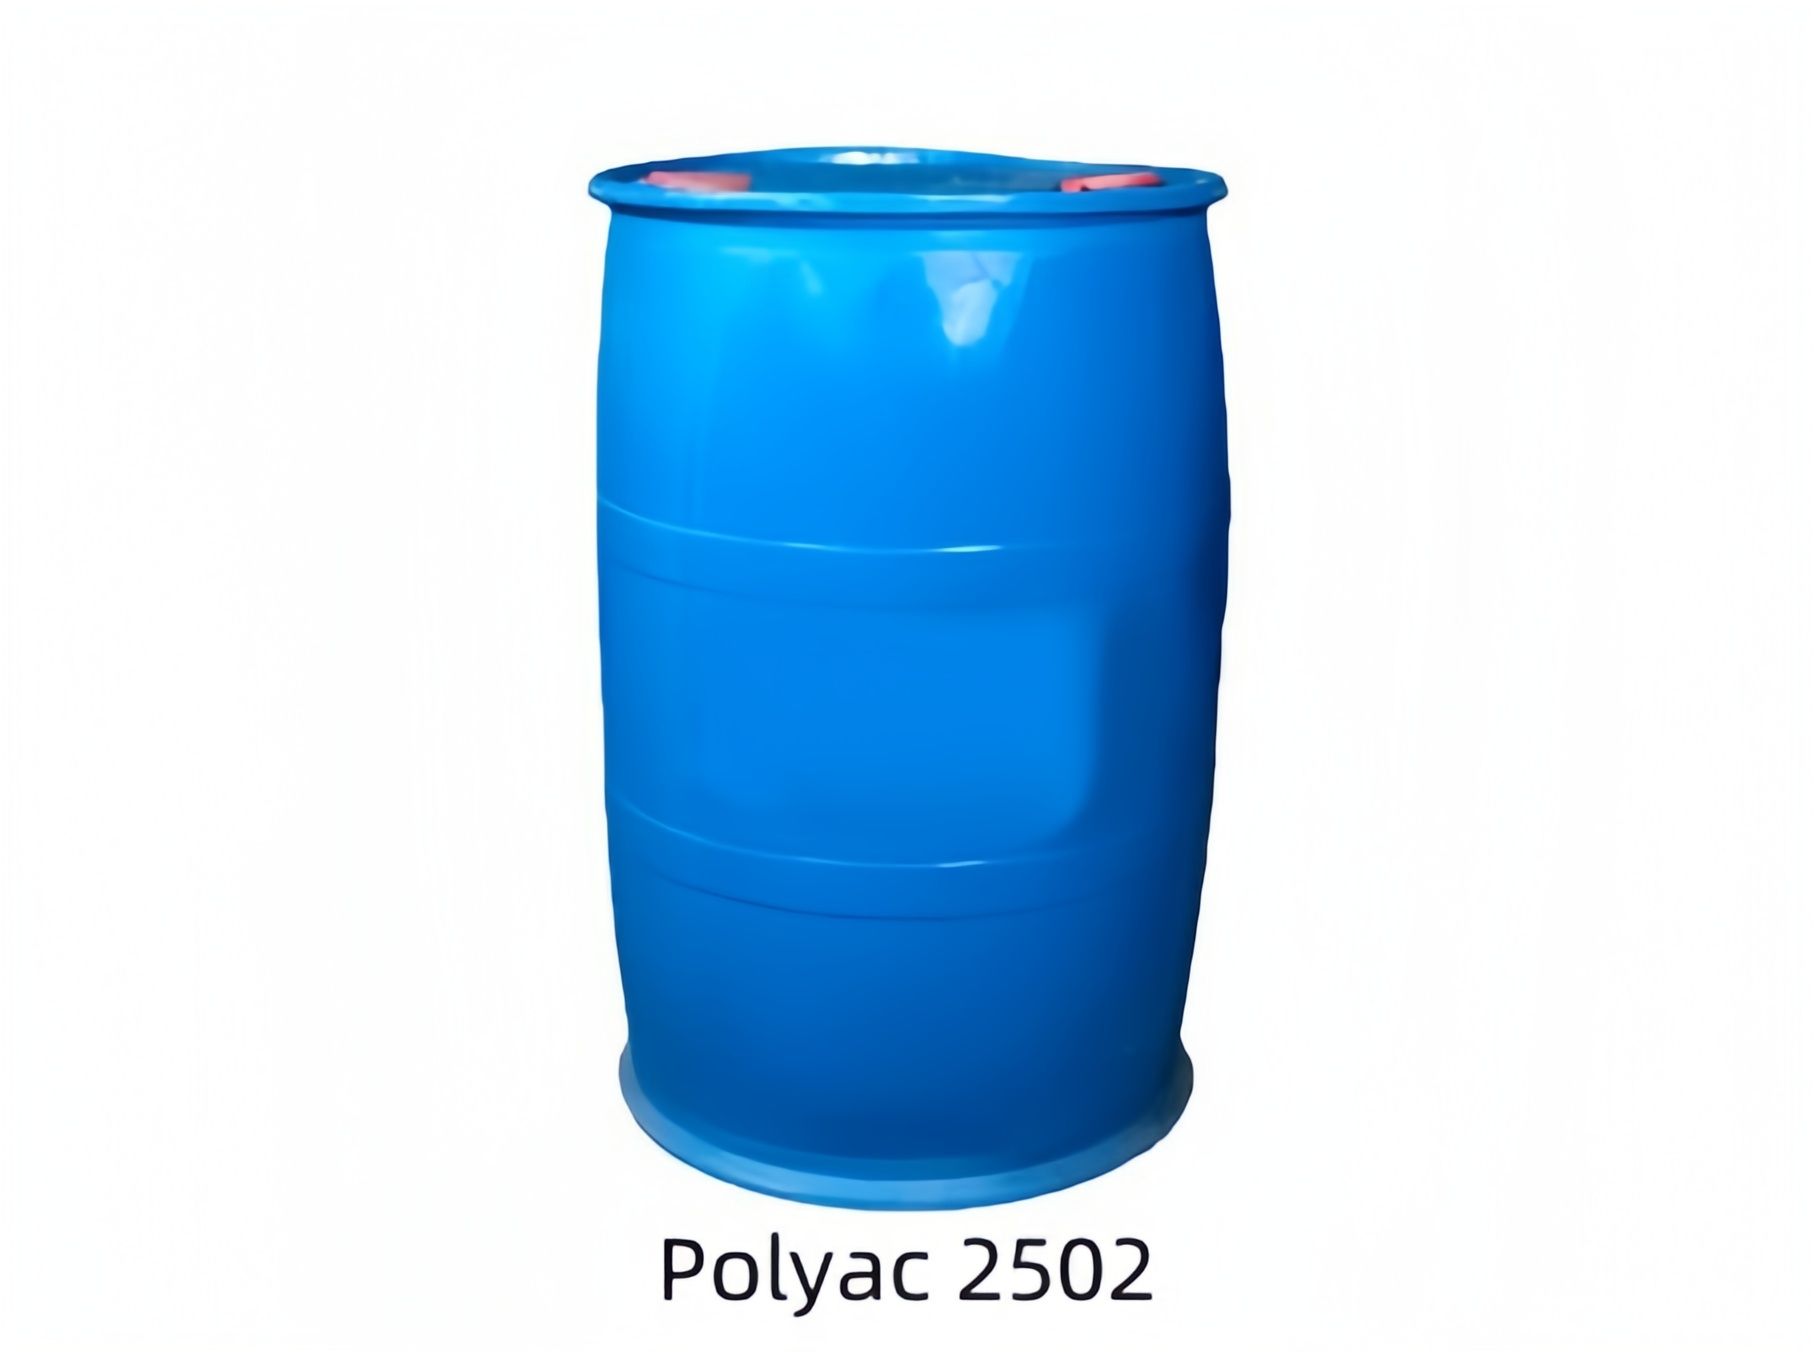 Coyote科优特丙烯酸乳液Polyac 2502